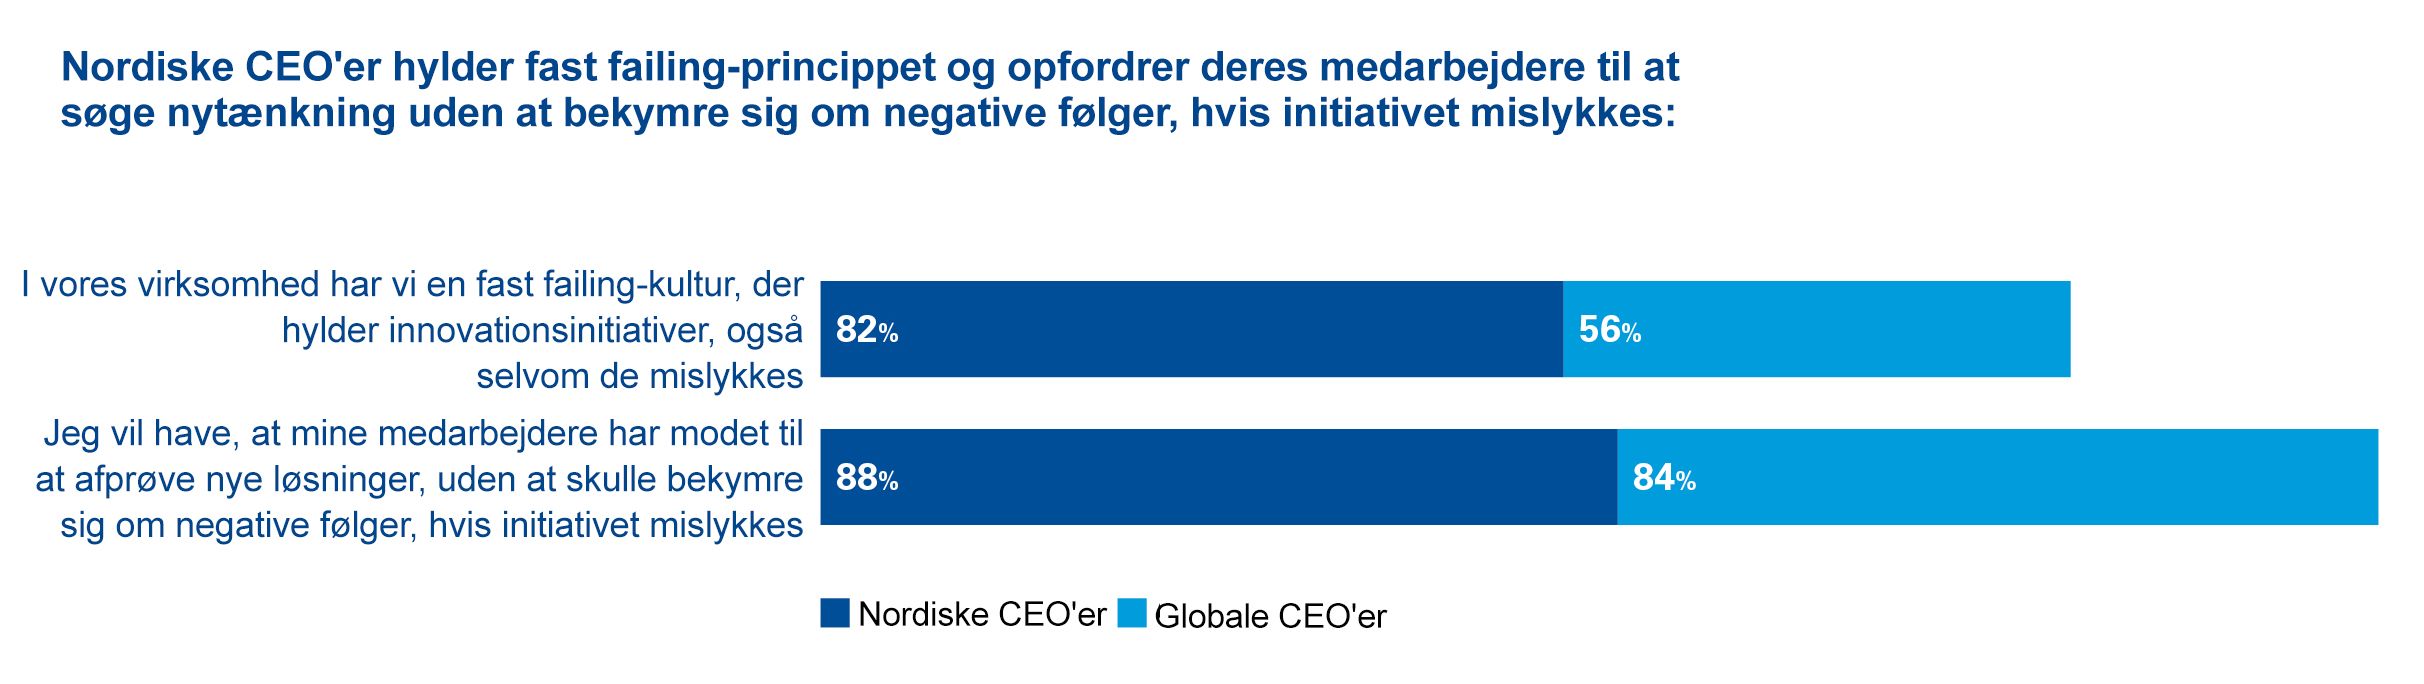 Nordiske CEO'er hylder fast failing-princippet og opfordrer deres medarbejdere til at søge nytænkning uden at bekymre sig om negative følger, hvis initiativet mislykkes